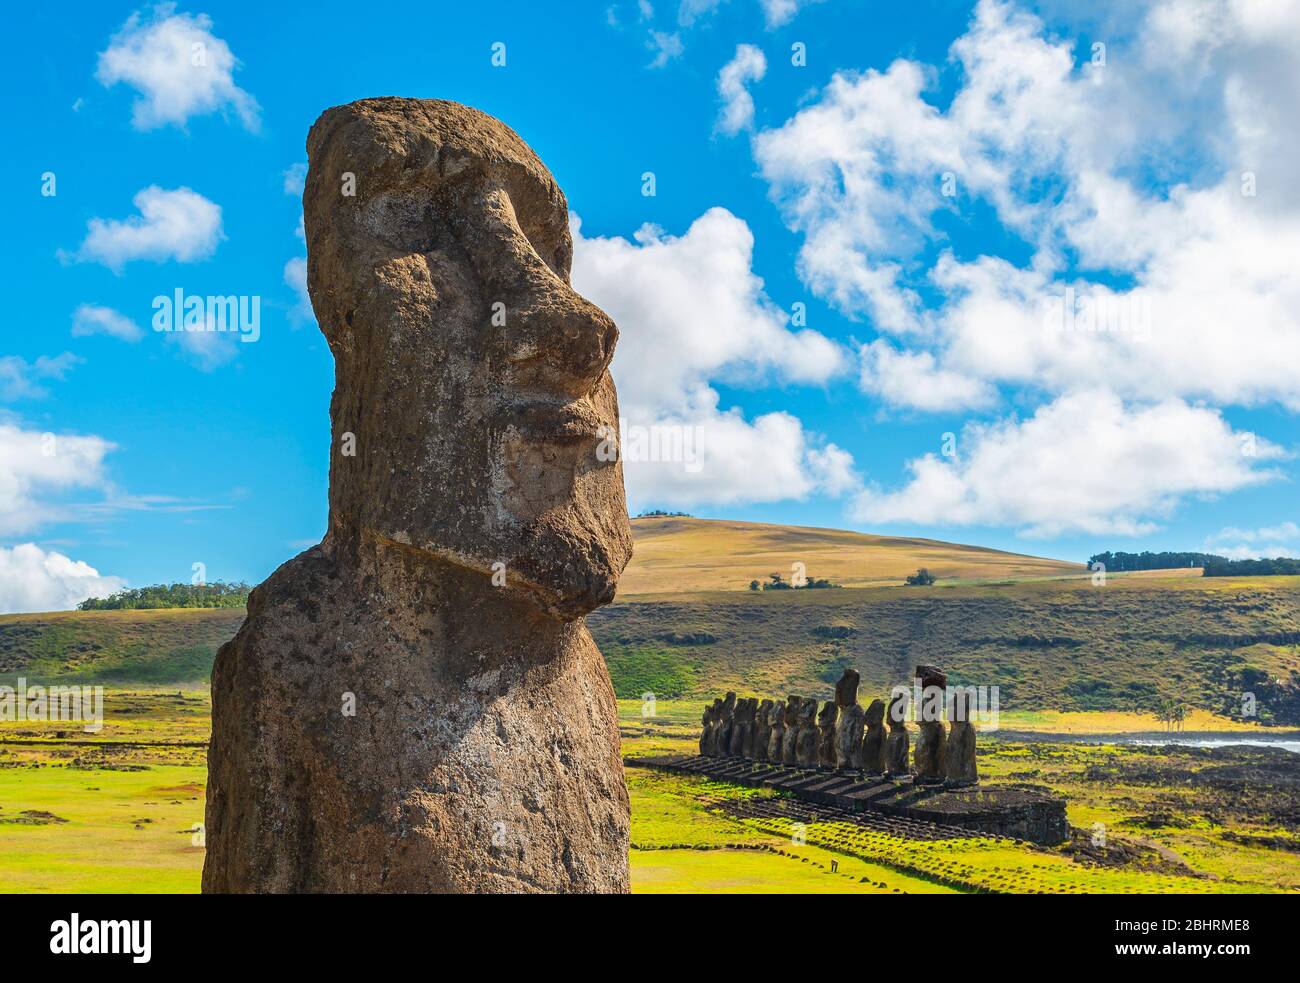 Moai Statue Close Up on a Summer Day, Ahu Tongariki, Rapa Nui (Easter Island), Chile. Stock Photo